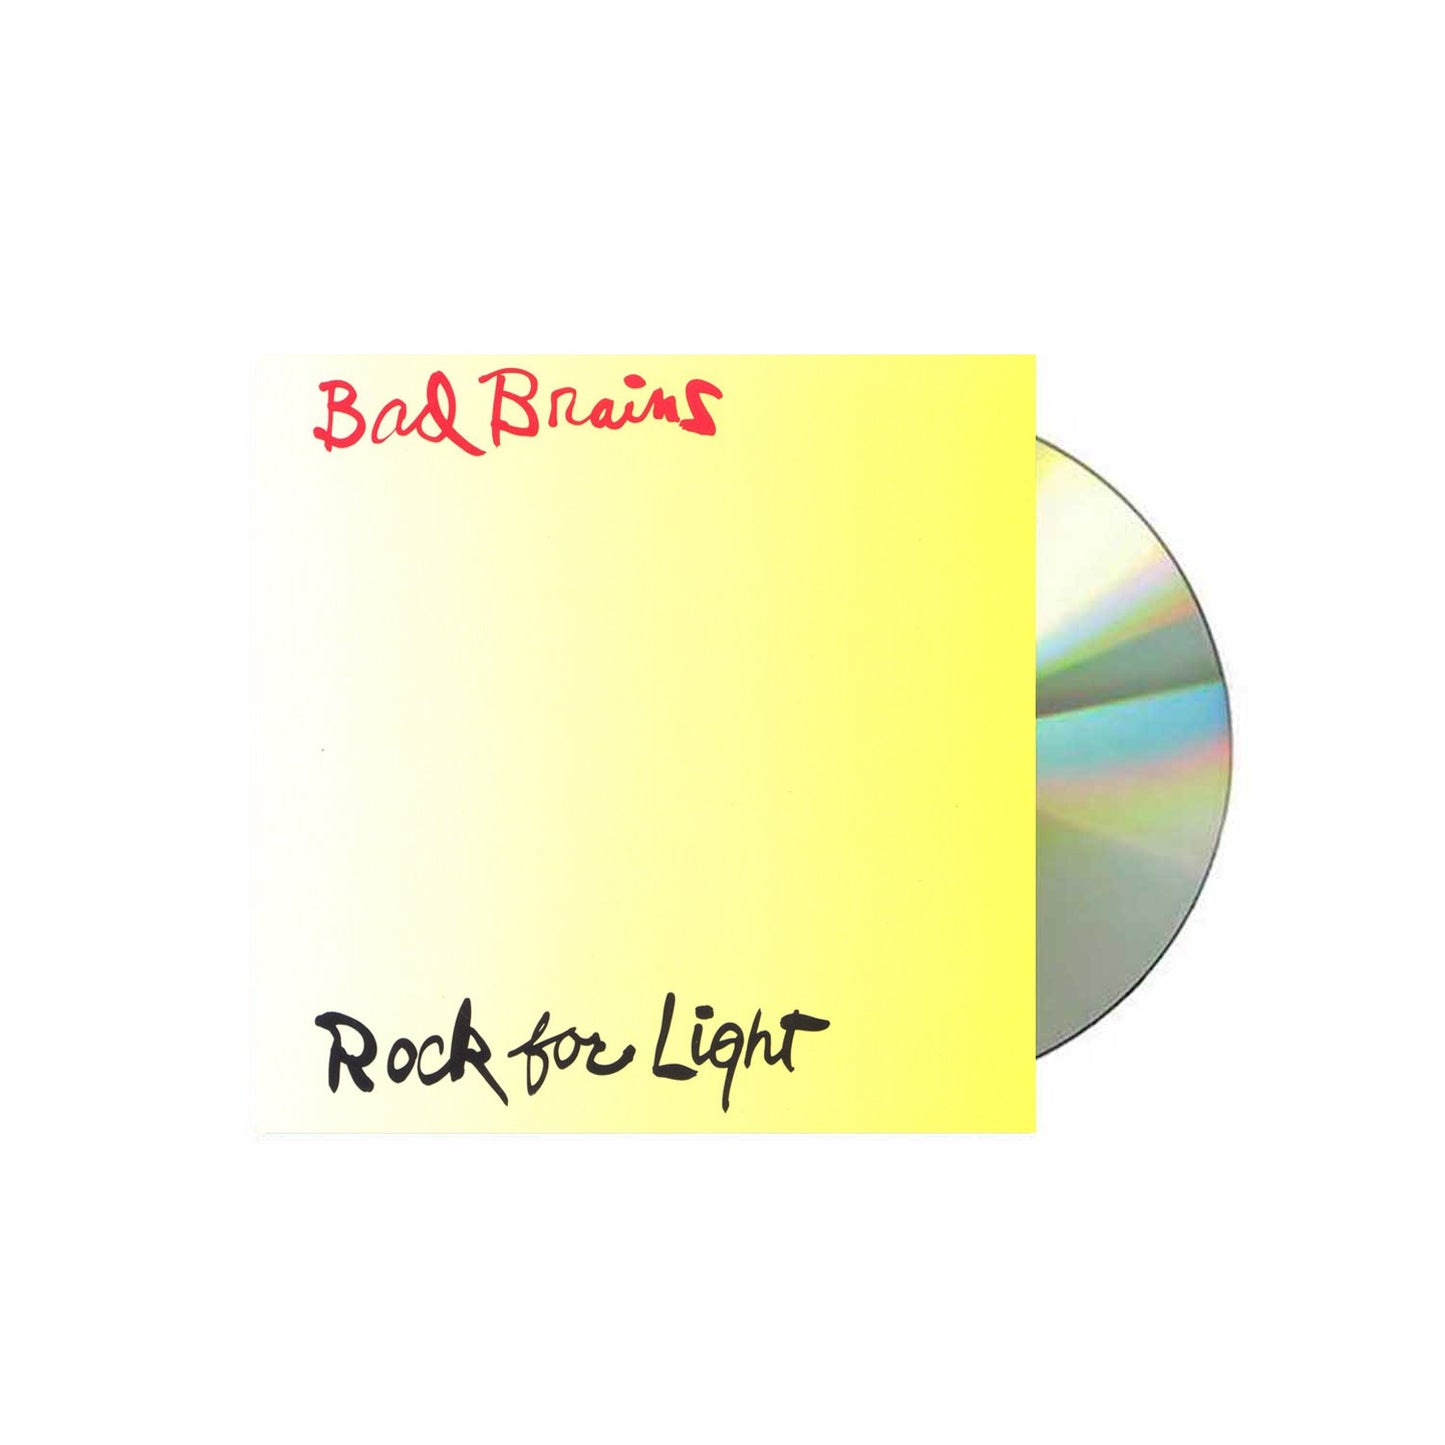 Bad Brains "Rock For Light" CD